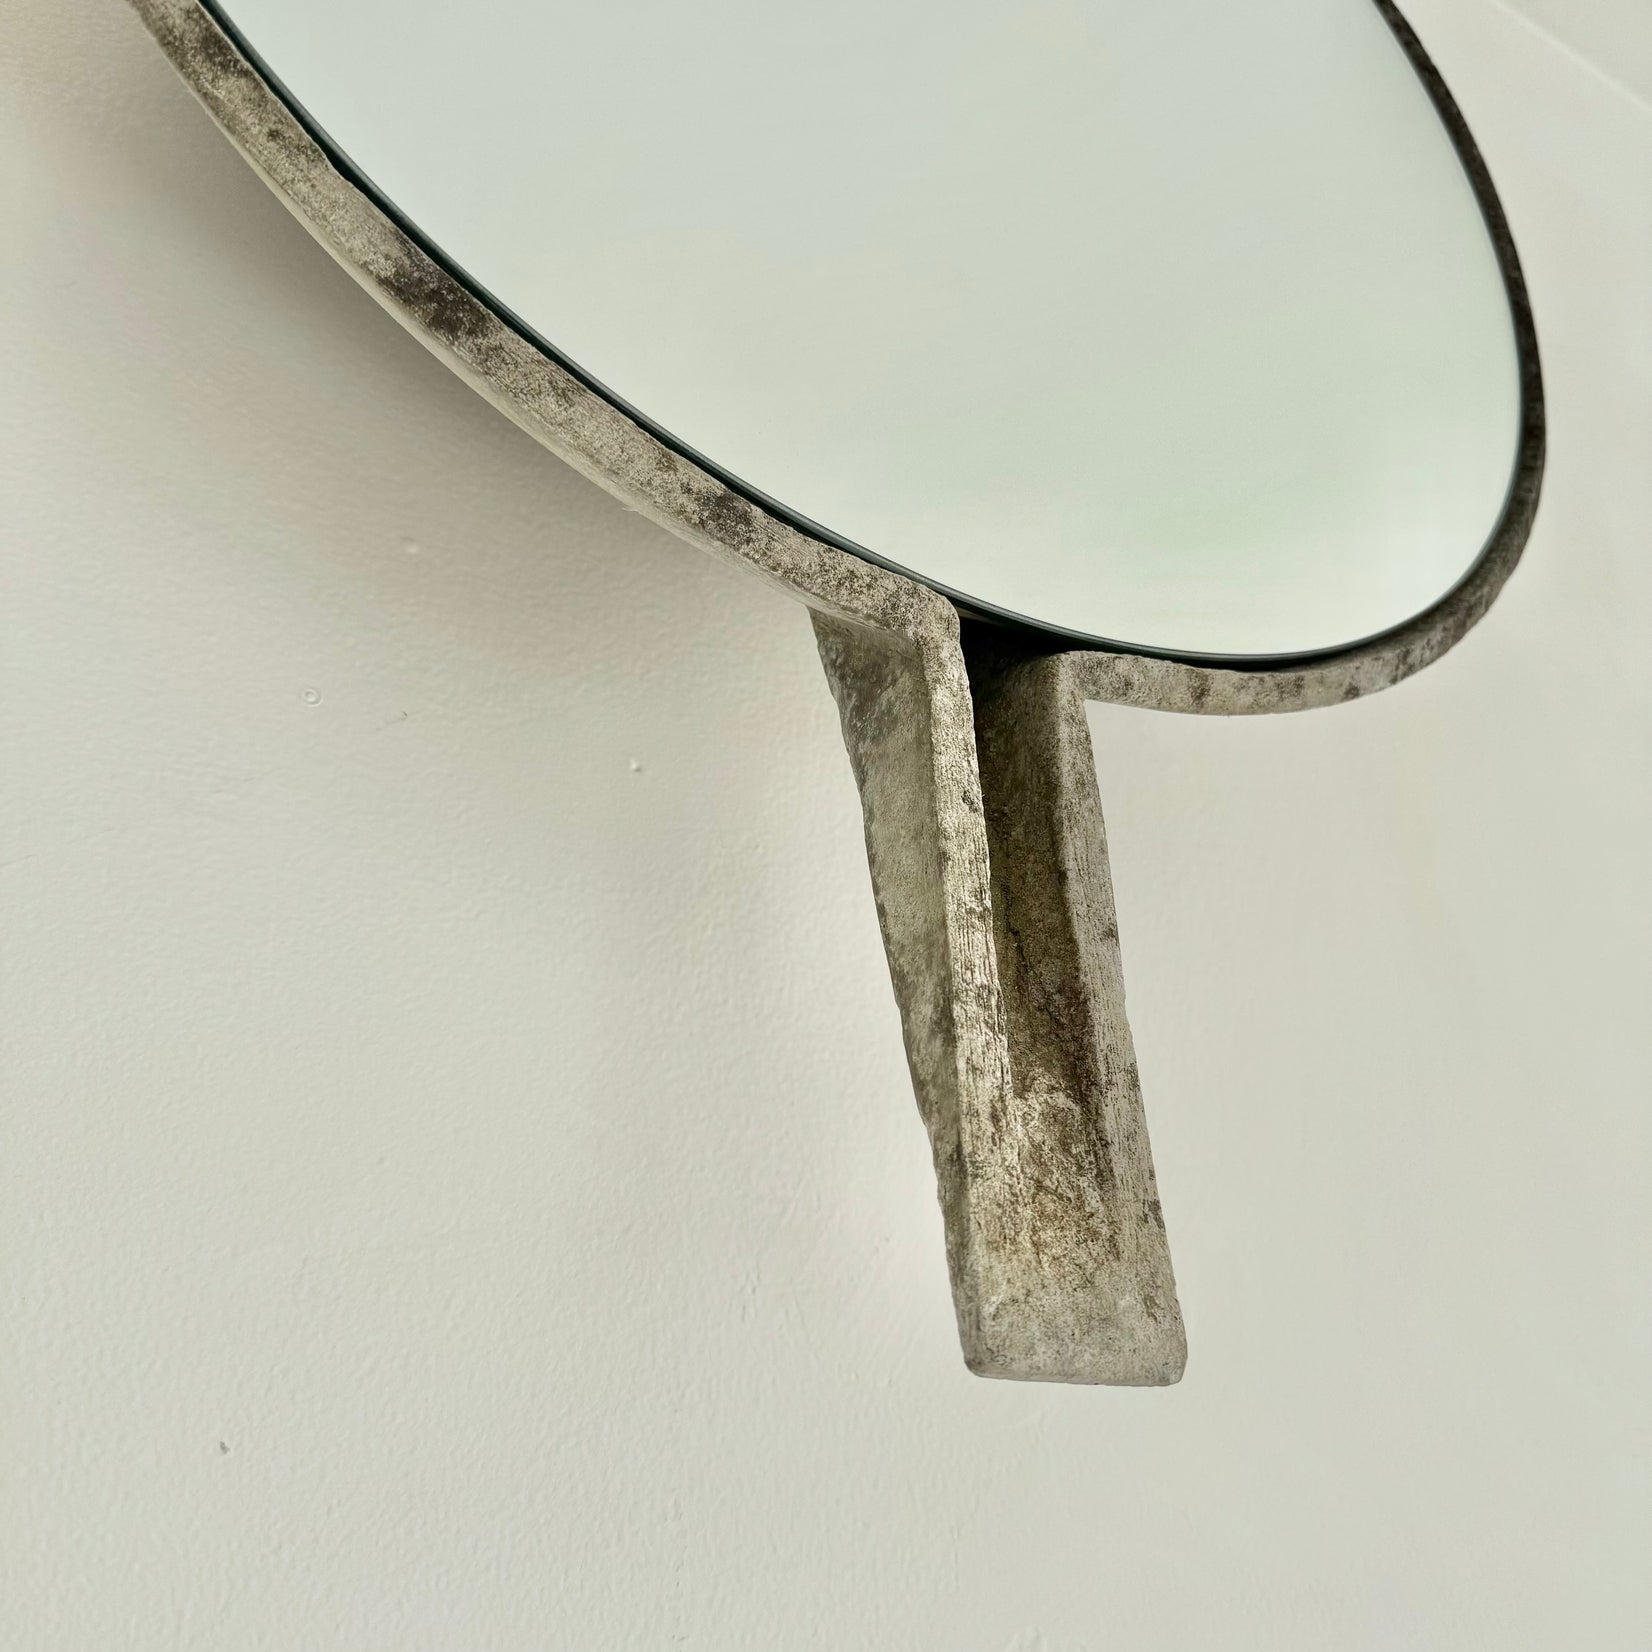 Willy Guhl Concrete Mirror with Spikes, 1960s Switzerland